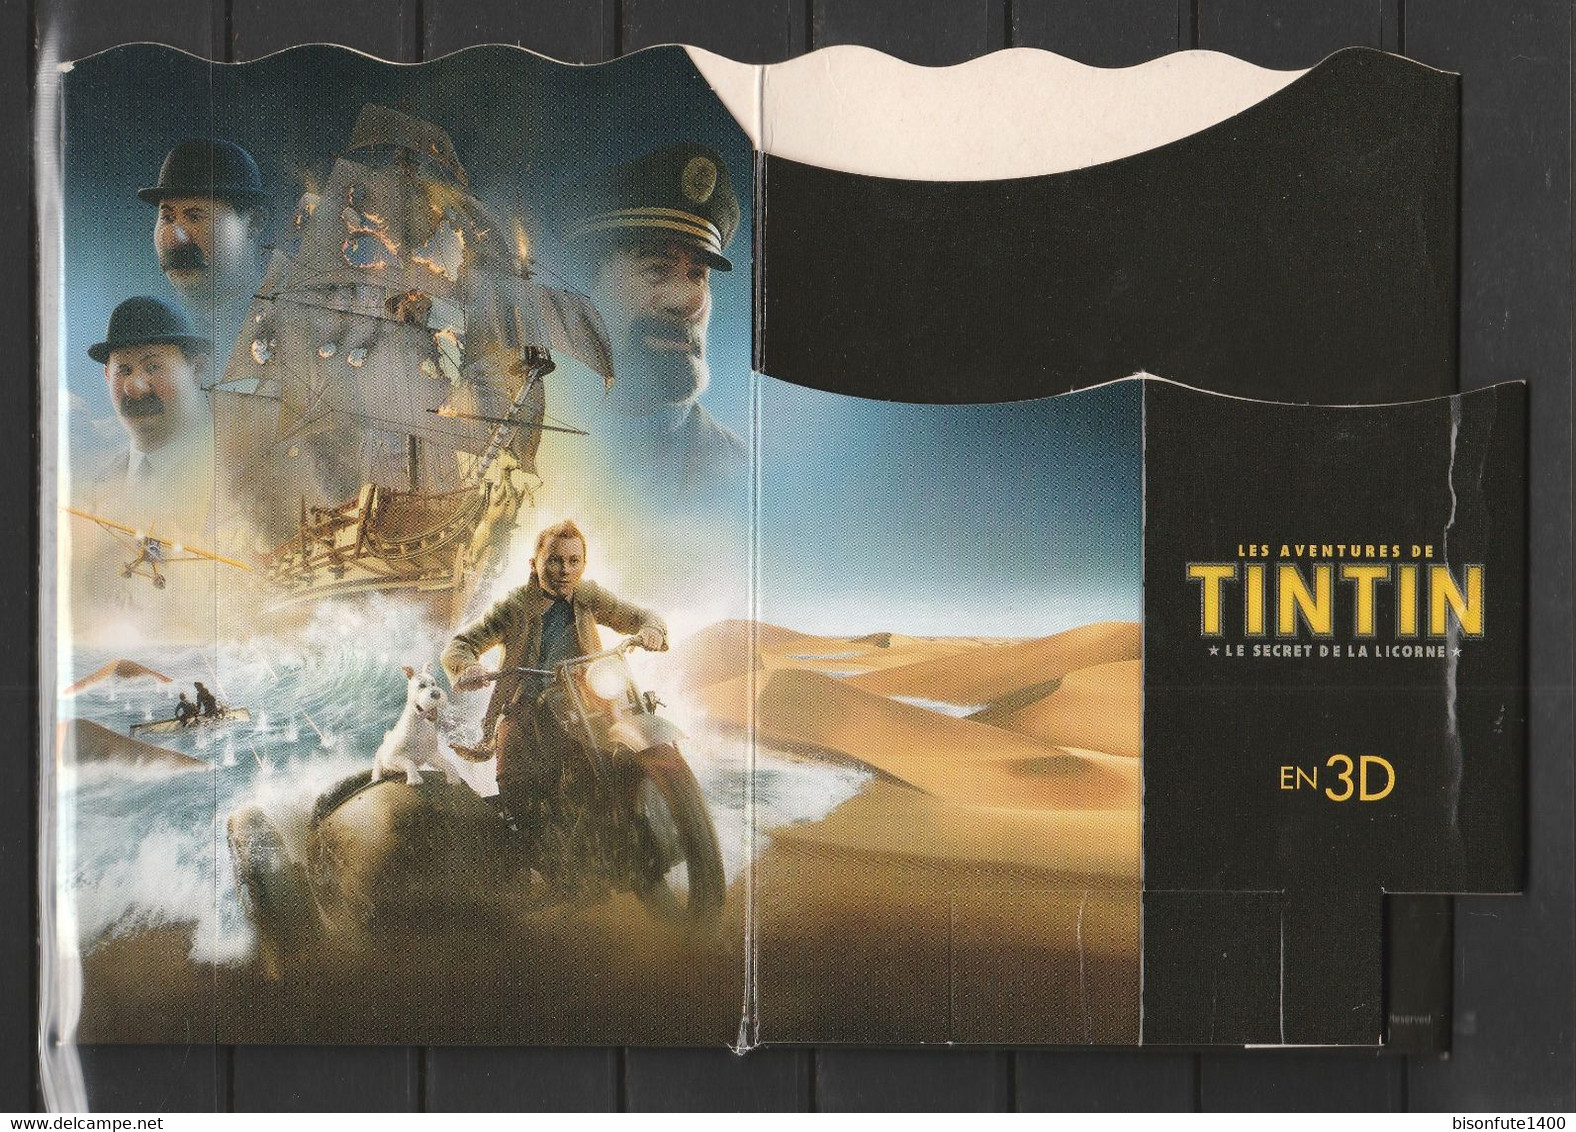 Tintin : Boite à Popcorn En 3D émise à L'occasion De La Diffusion Au Cinéma Du Film Avec Tintin (voir Photos) - Matériel Et Accessoires